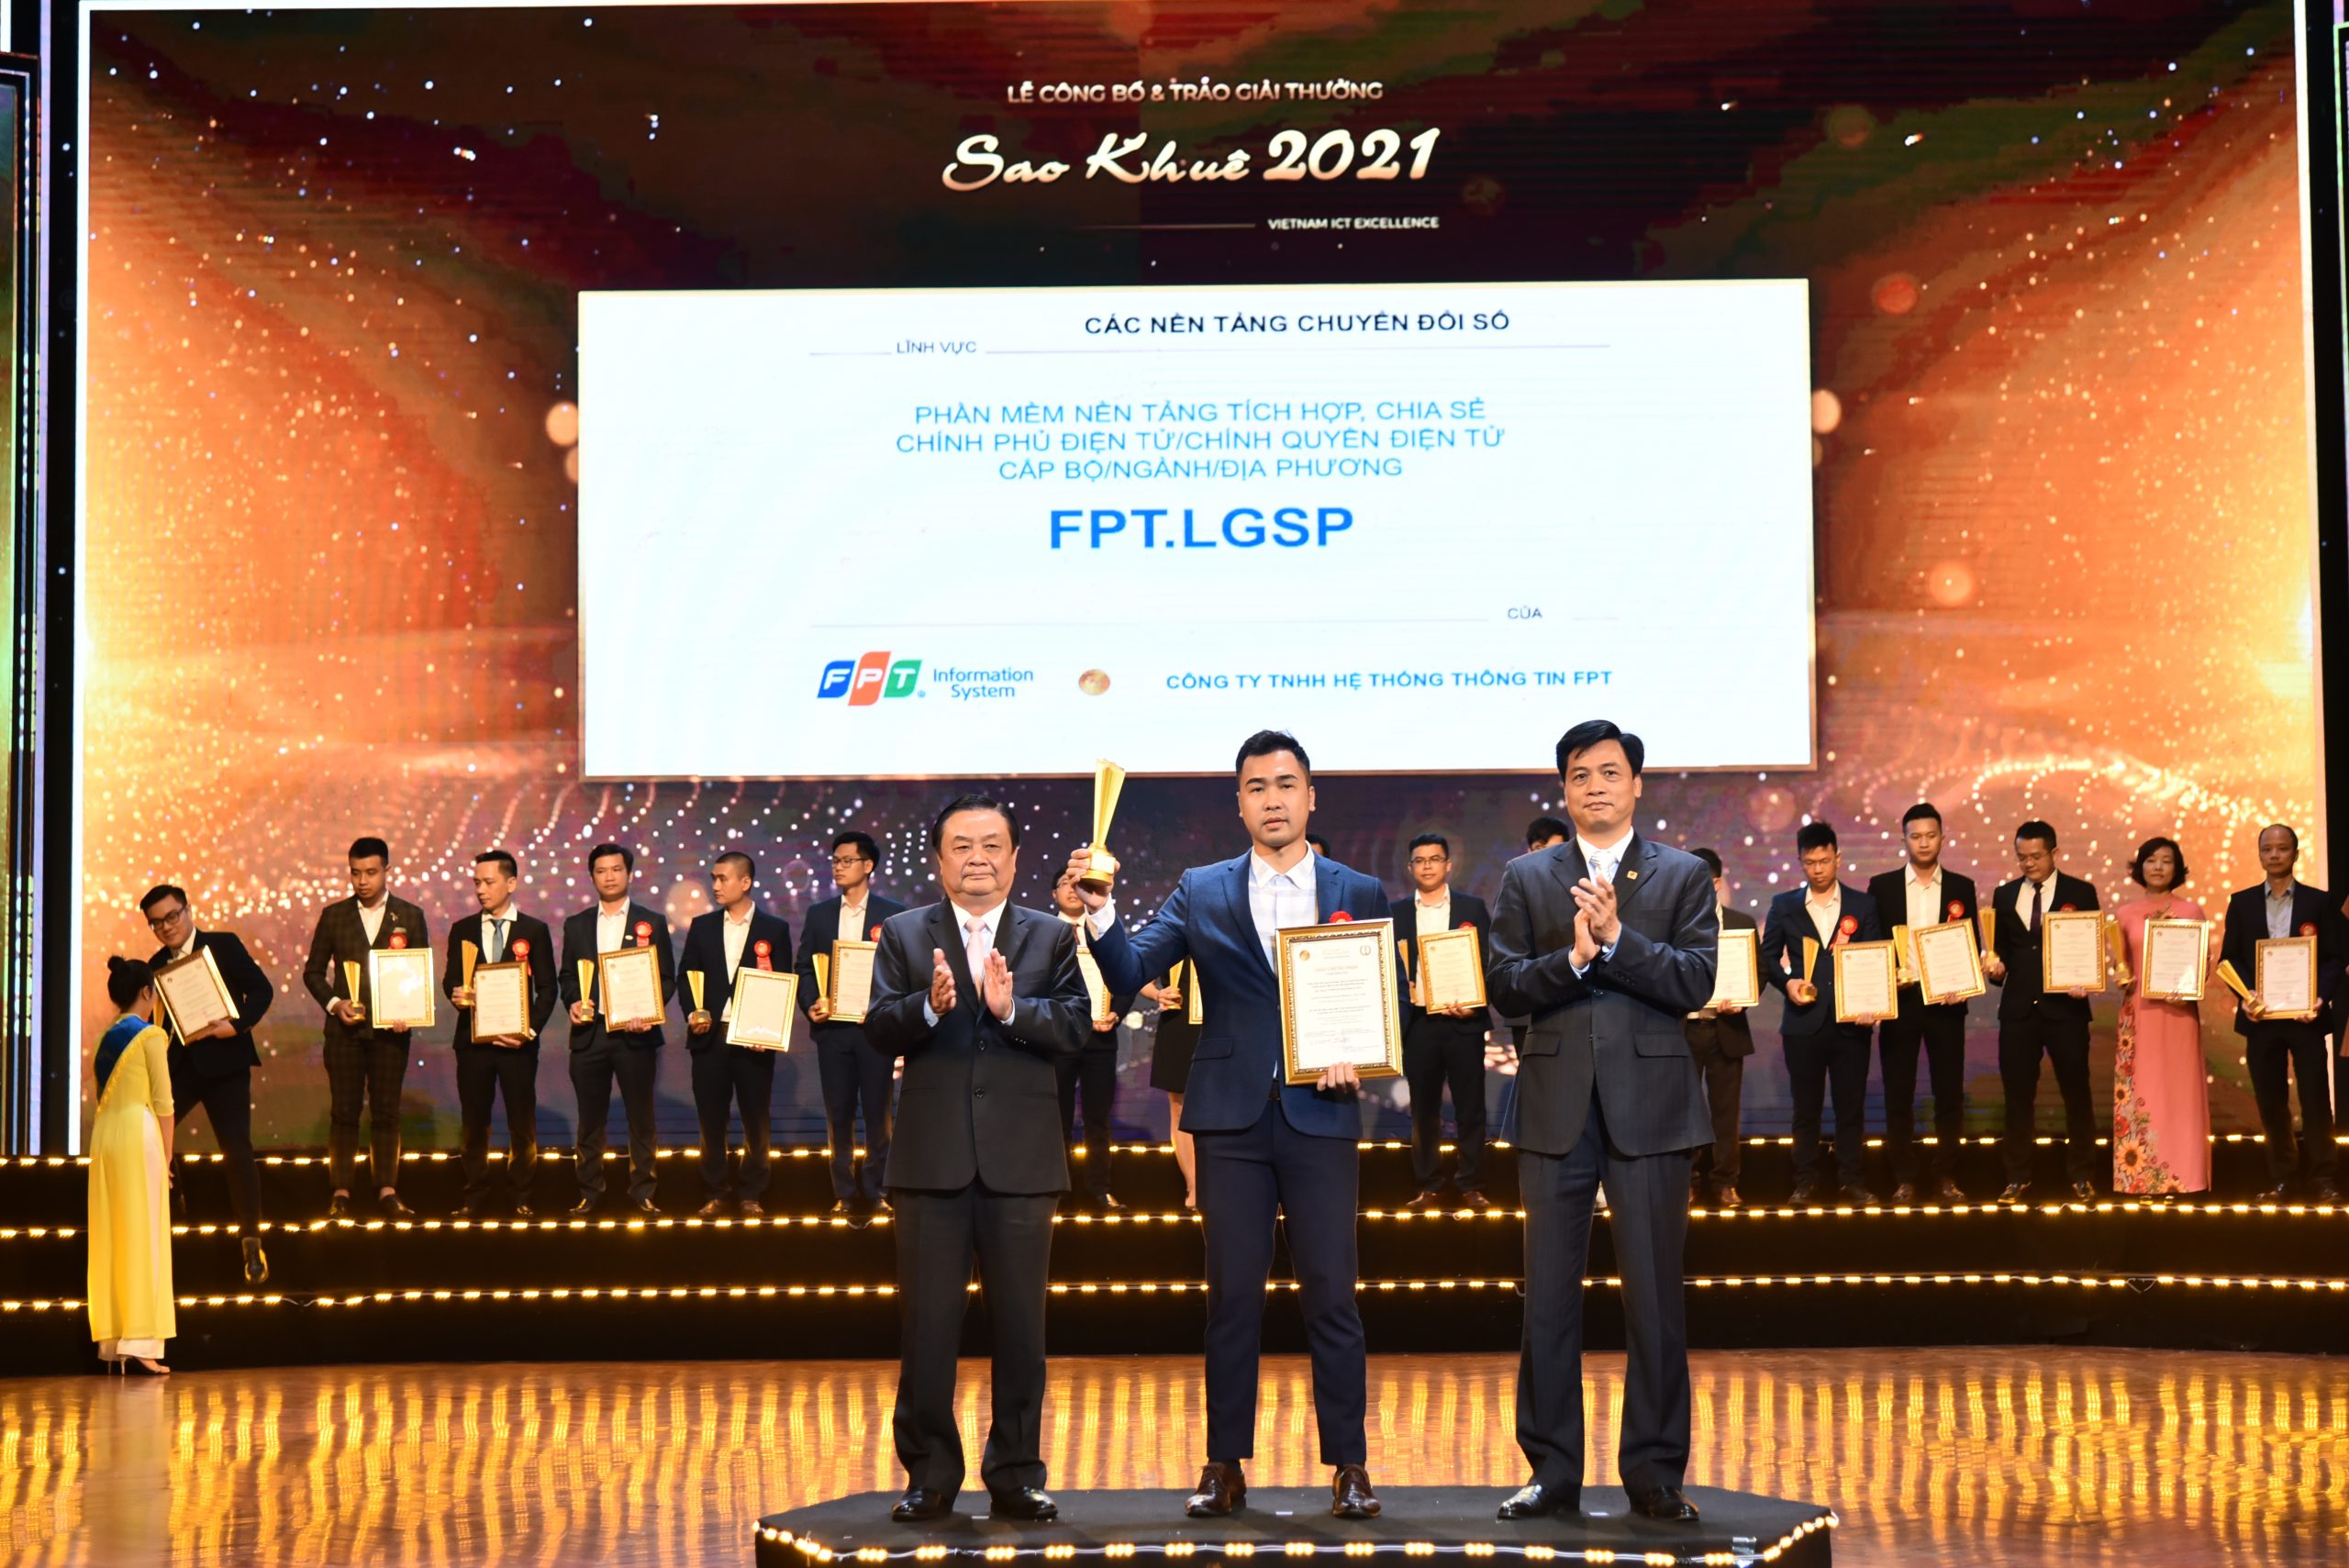 Nền tảng tích hợp, chia sẻ Chính phủ điện tử/Chính quyền điện tử cấp Bộ/ngành/địa phương – FPT.LGSP đạt Giải thưởng Sao Khuê 2021